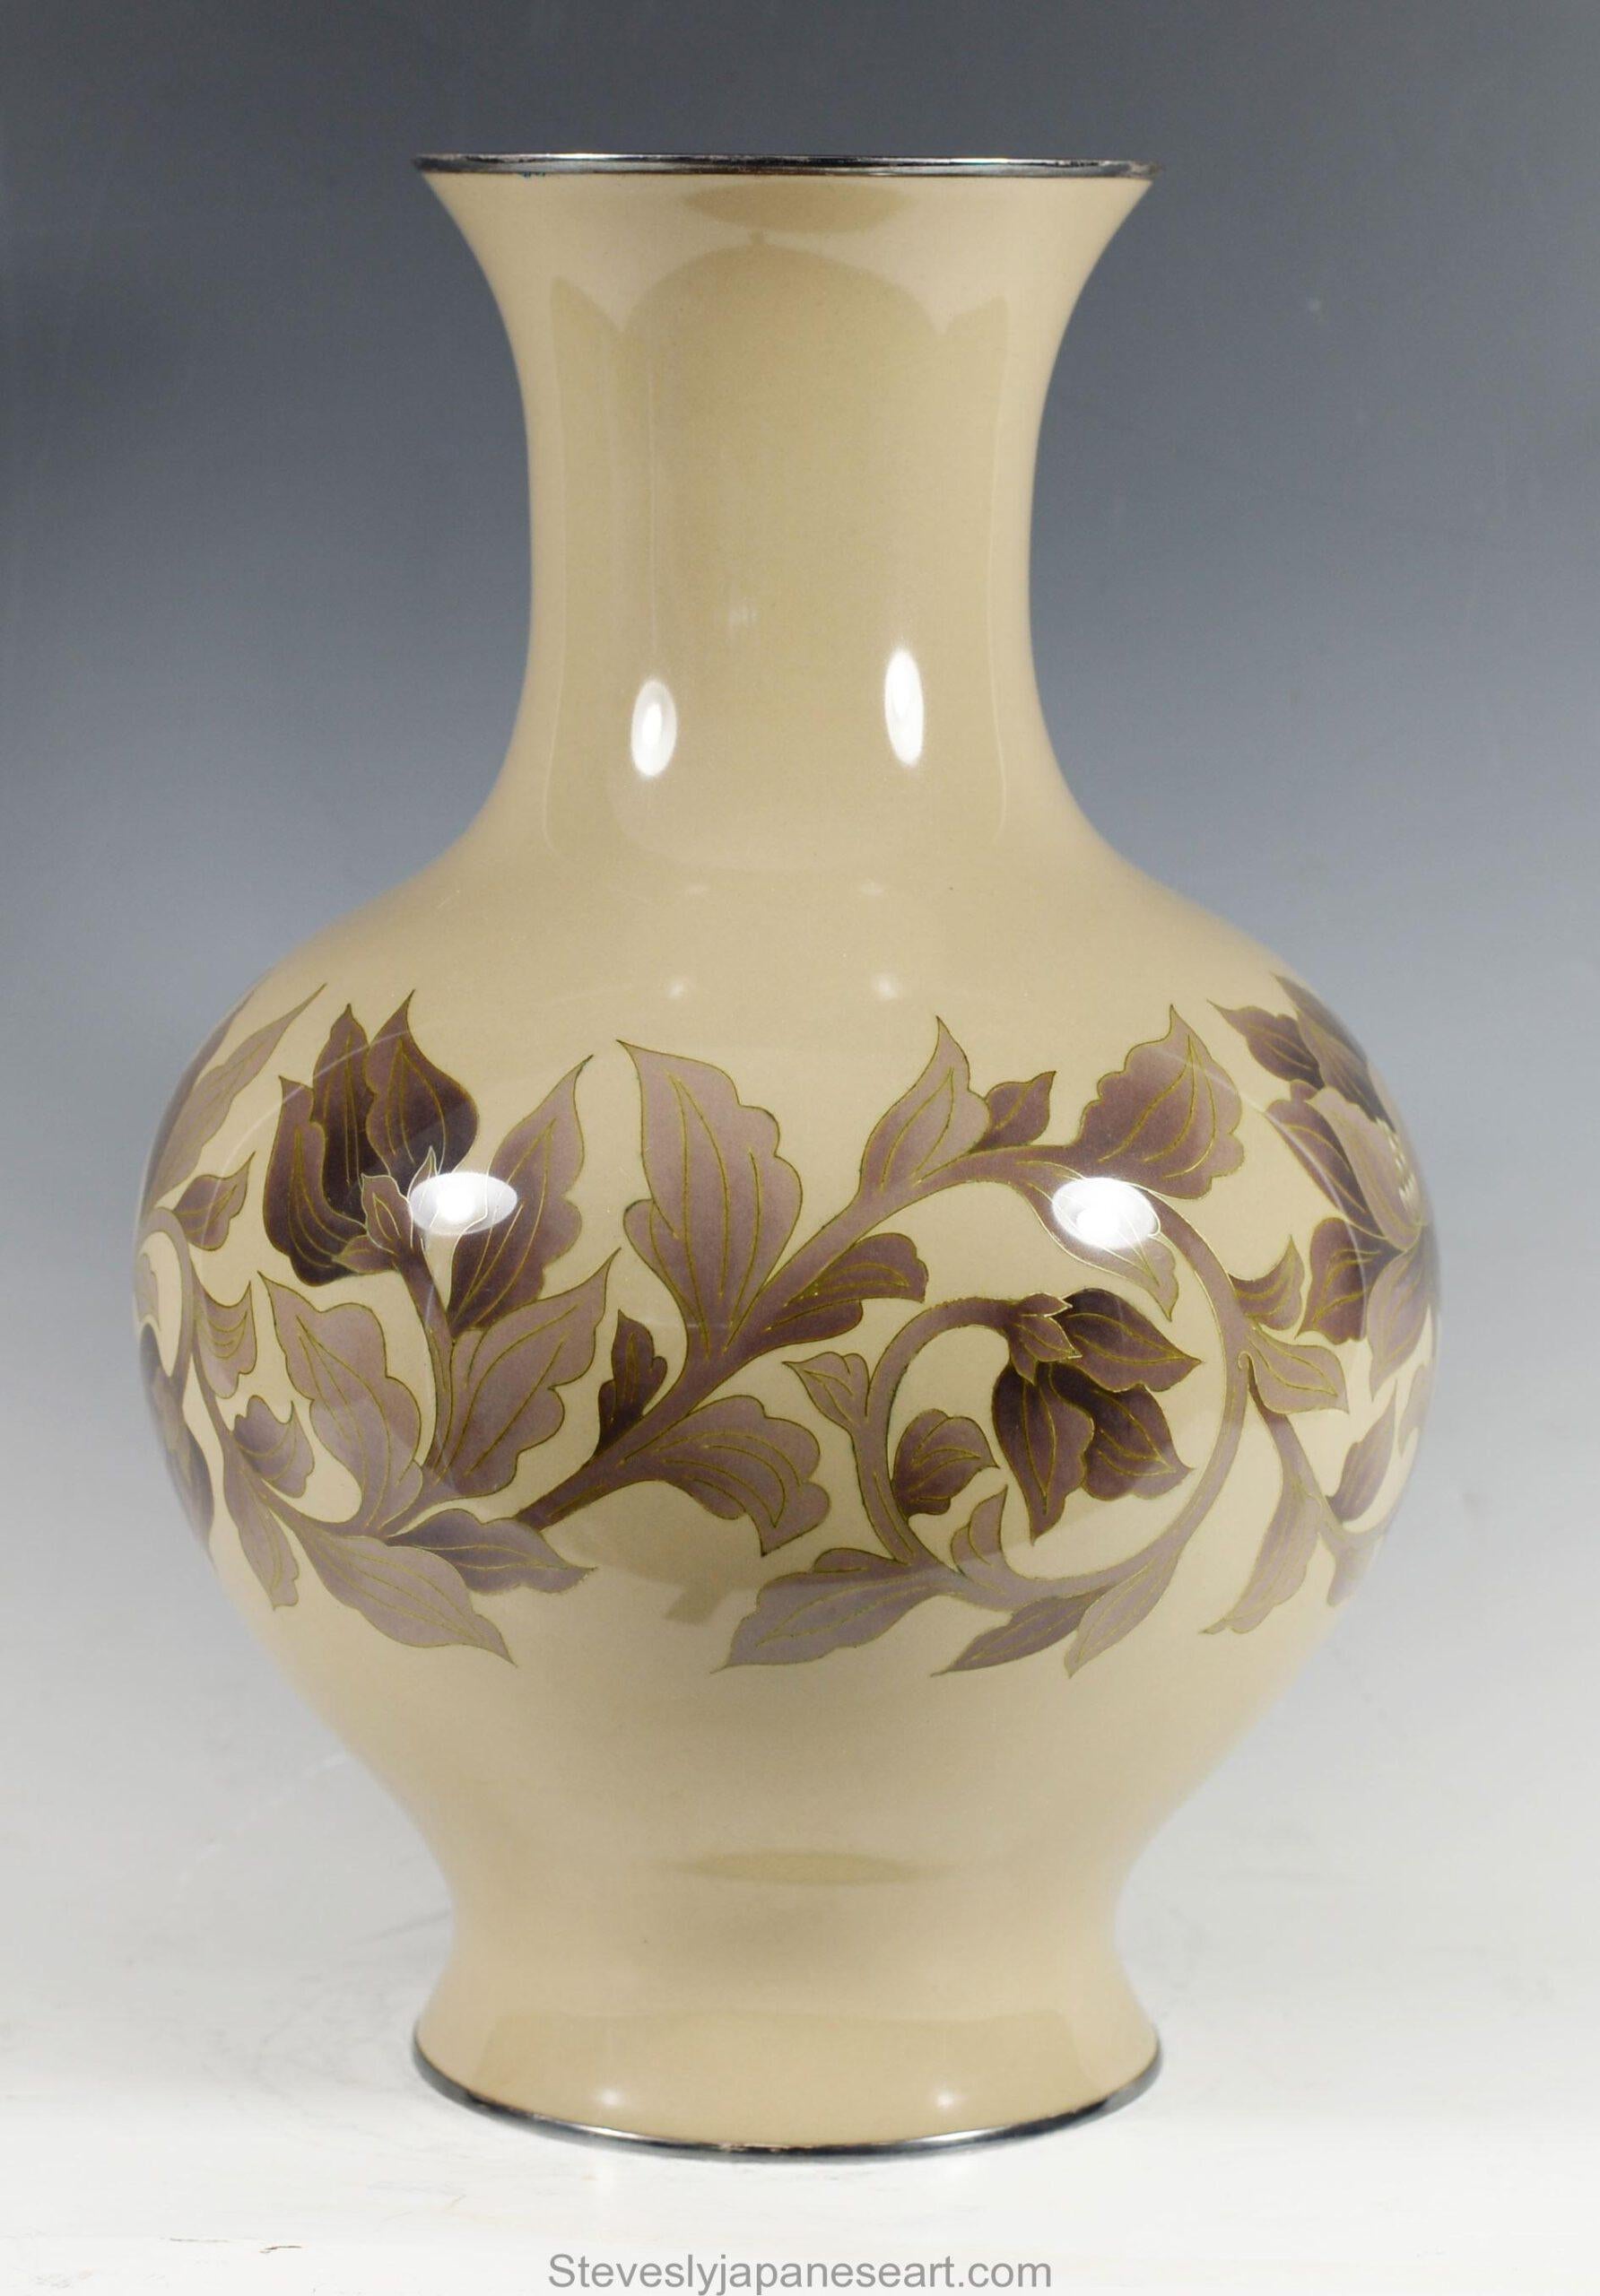 Dans le cadre de notre collection d'œuvres d'art japonaises, nous sommes ravis d'offrir ce grand vase en émail cloisonné du début du 20e siècle de la période Meiji/Taisho, vers 1920, de la très réputée société Ando Jubei. Ce grand vase globulaire de